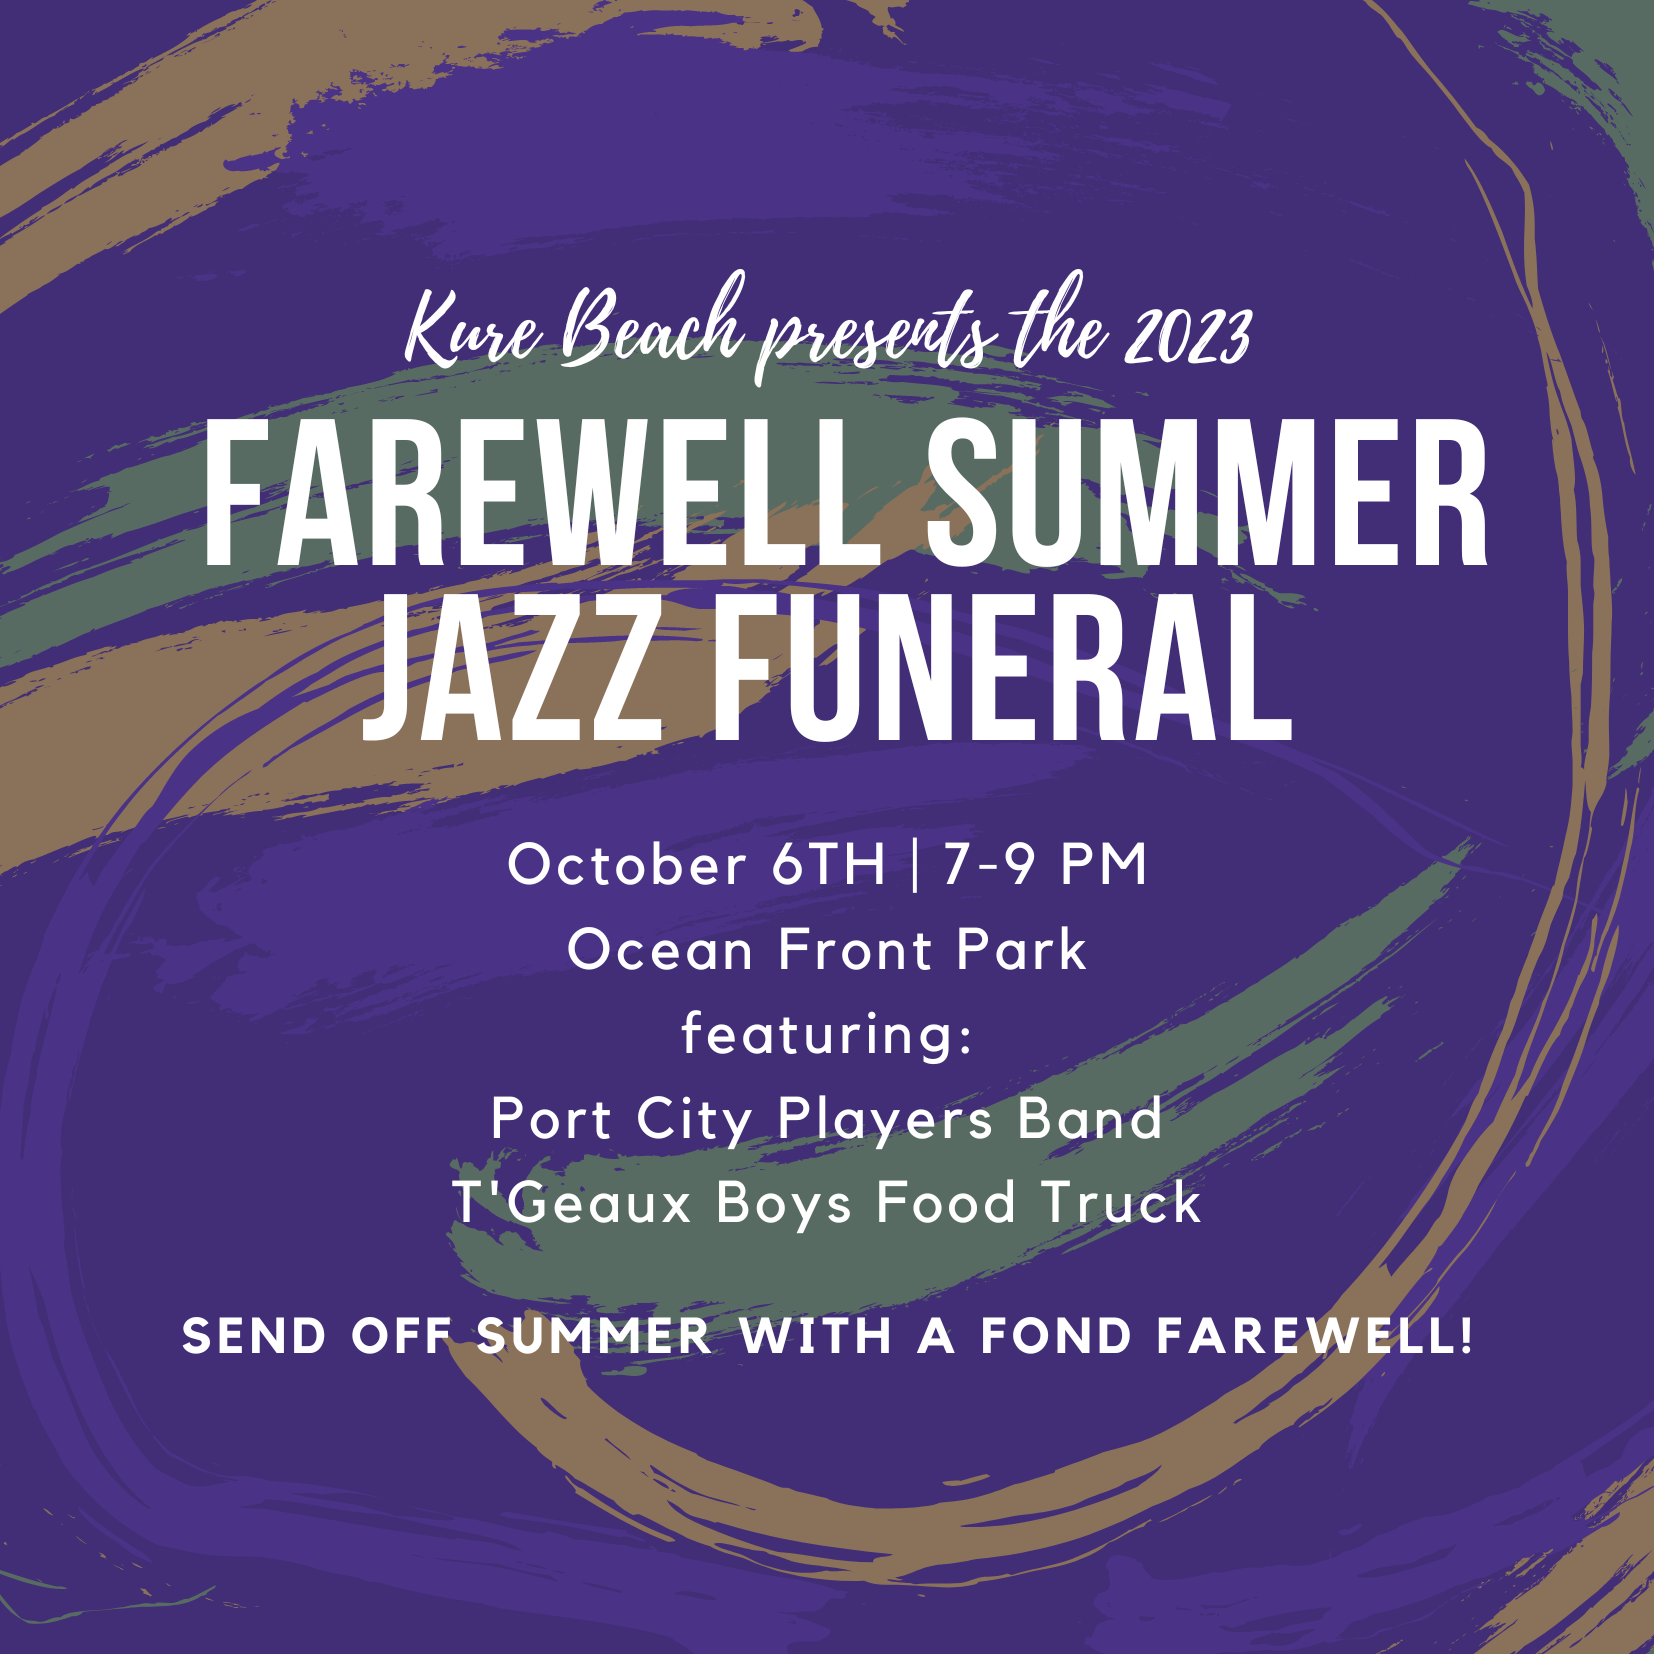 Farewell Summer Jazz Funeral Flyer